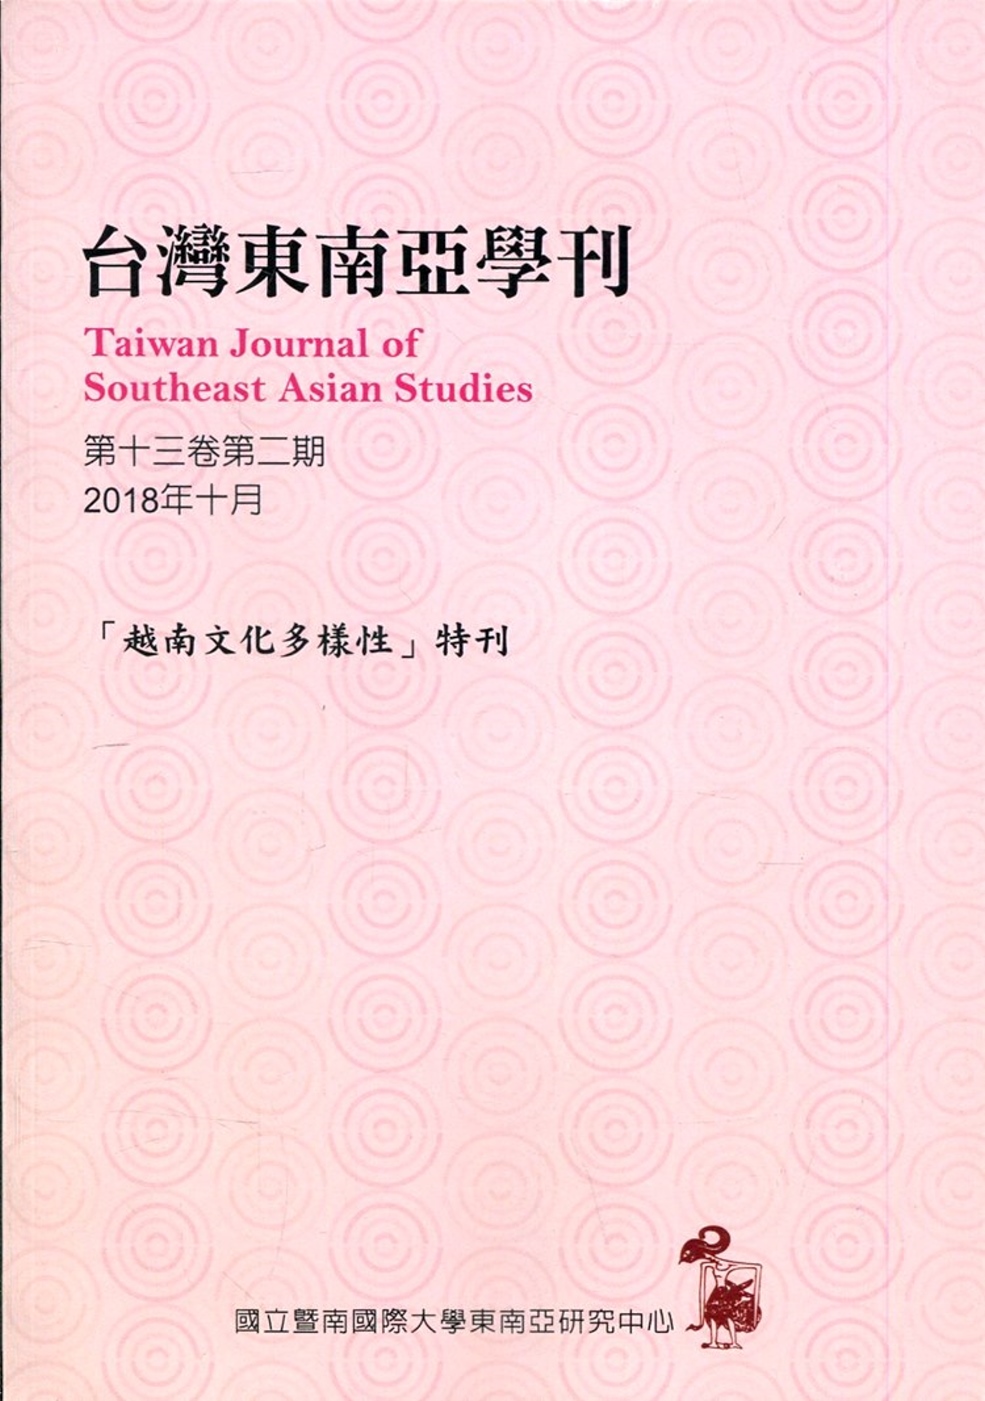 台灣東南亞學刊第13卷2期(2018/10)「越南文化多樣性」特刊